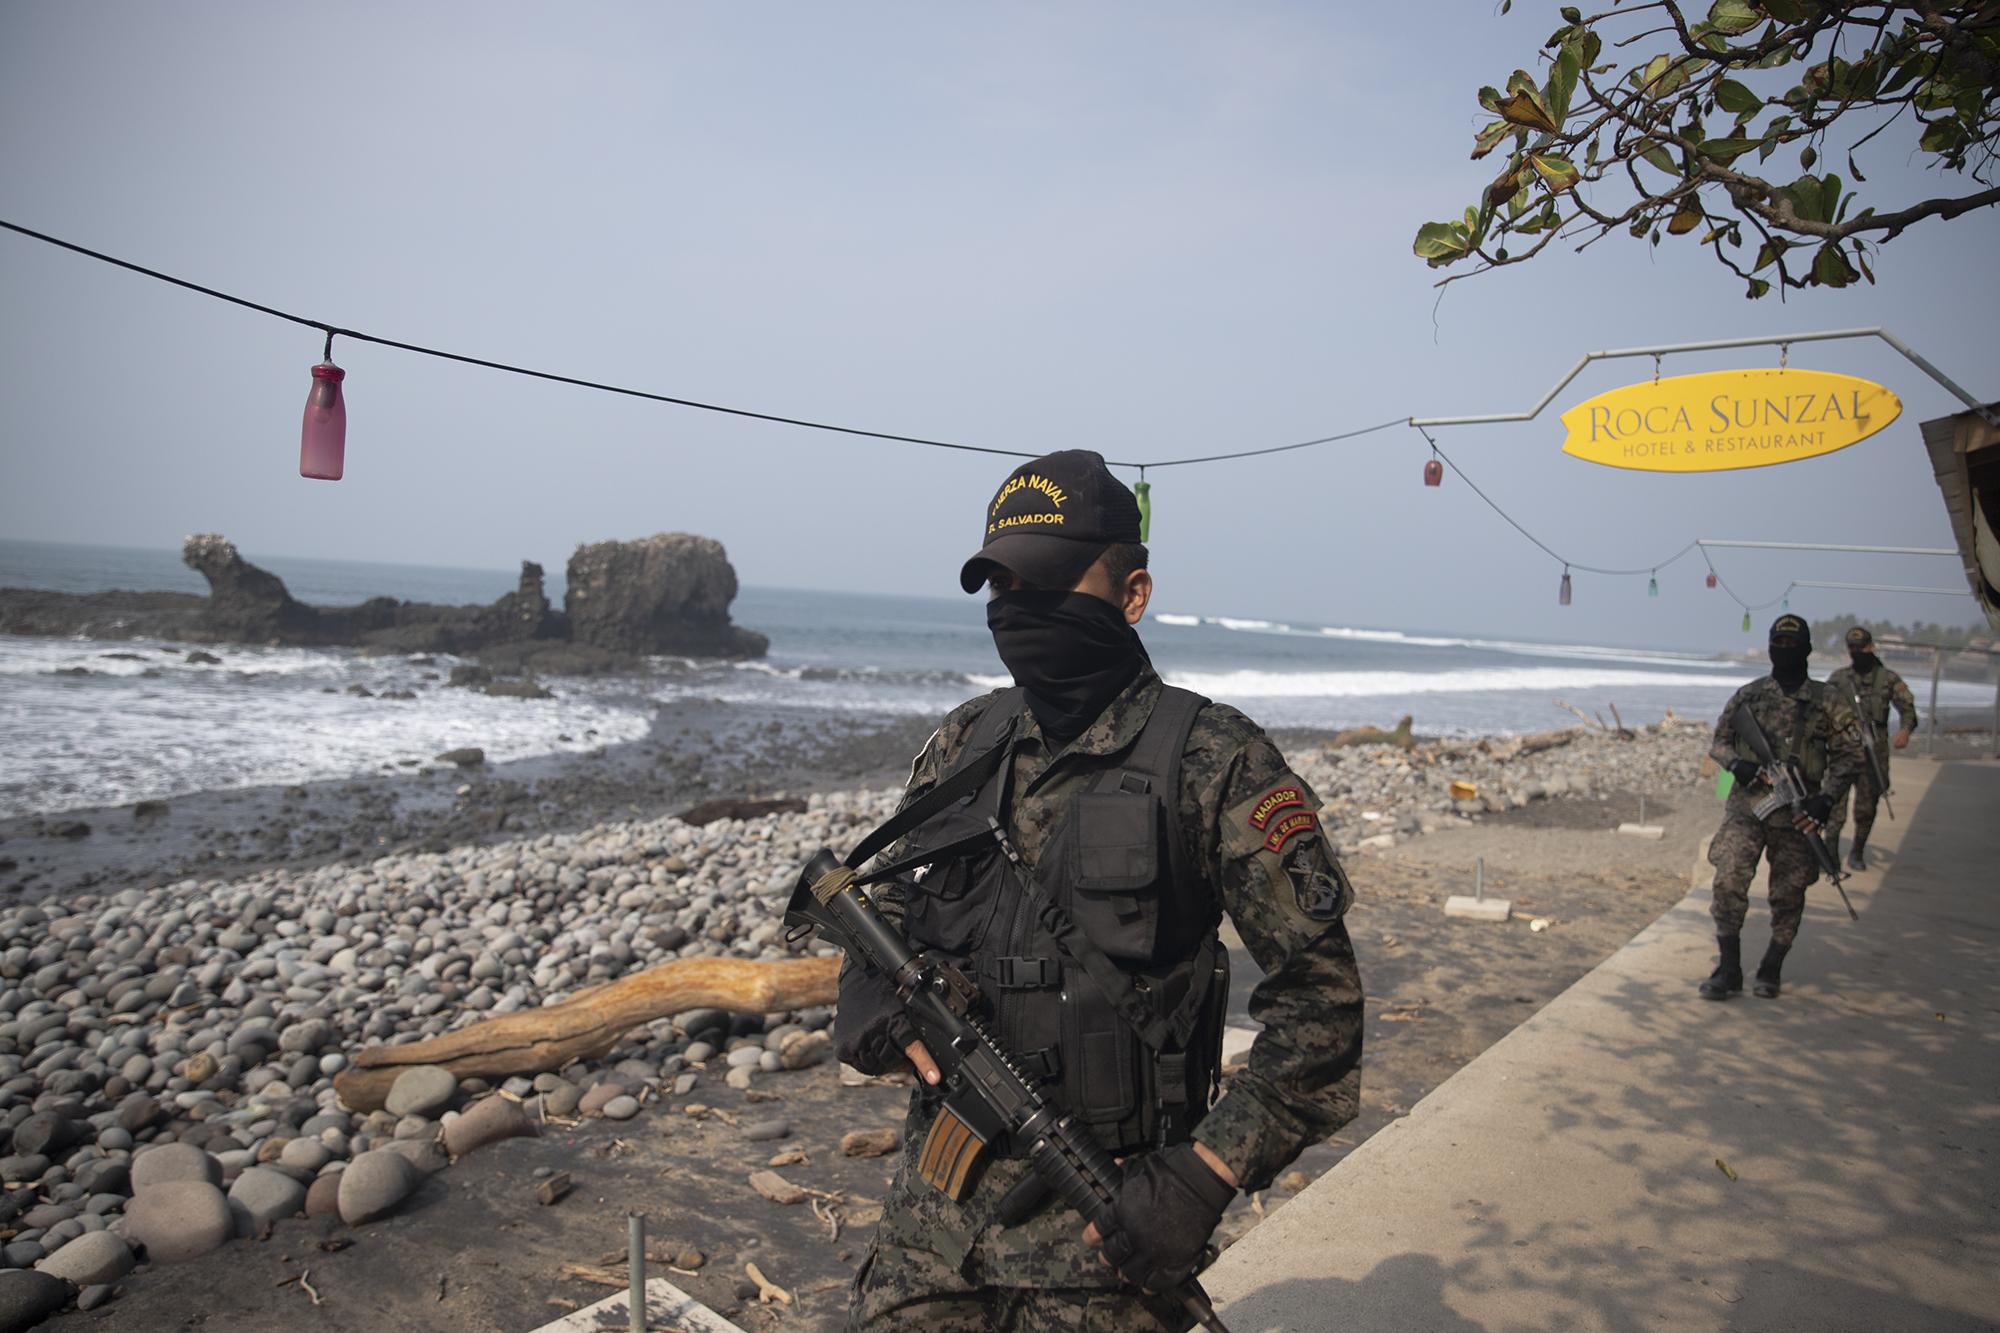 La única presencia en la playa El Tunco es la de militares y policías que vigilan que nadie se salte la cuarentena domiciliar por el coronavirus y visiten una de las playas más populares de El Salvador. Foto de El Faro: Carlos Barrera